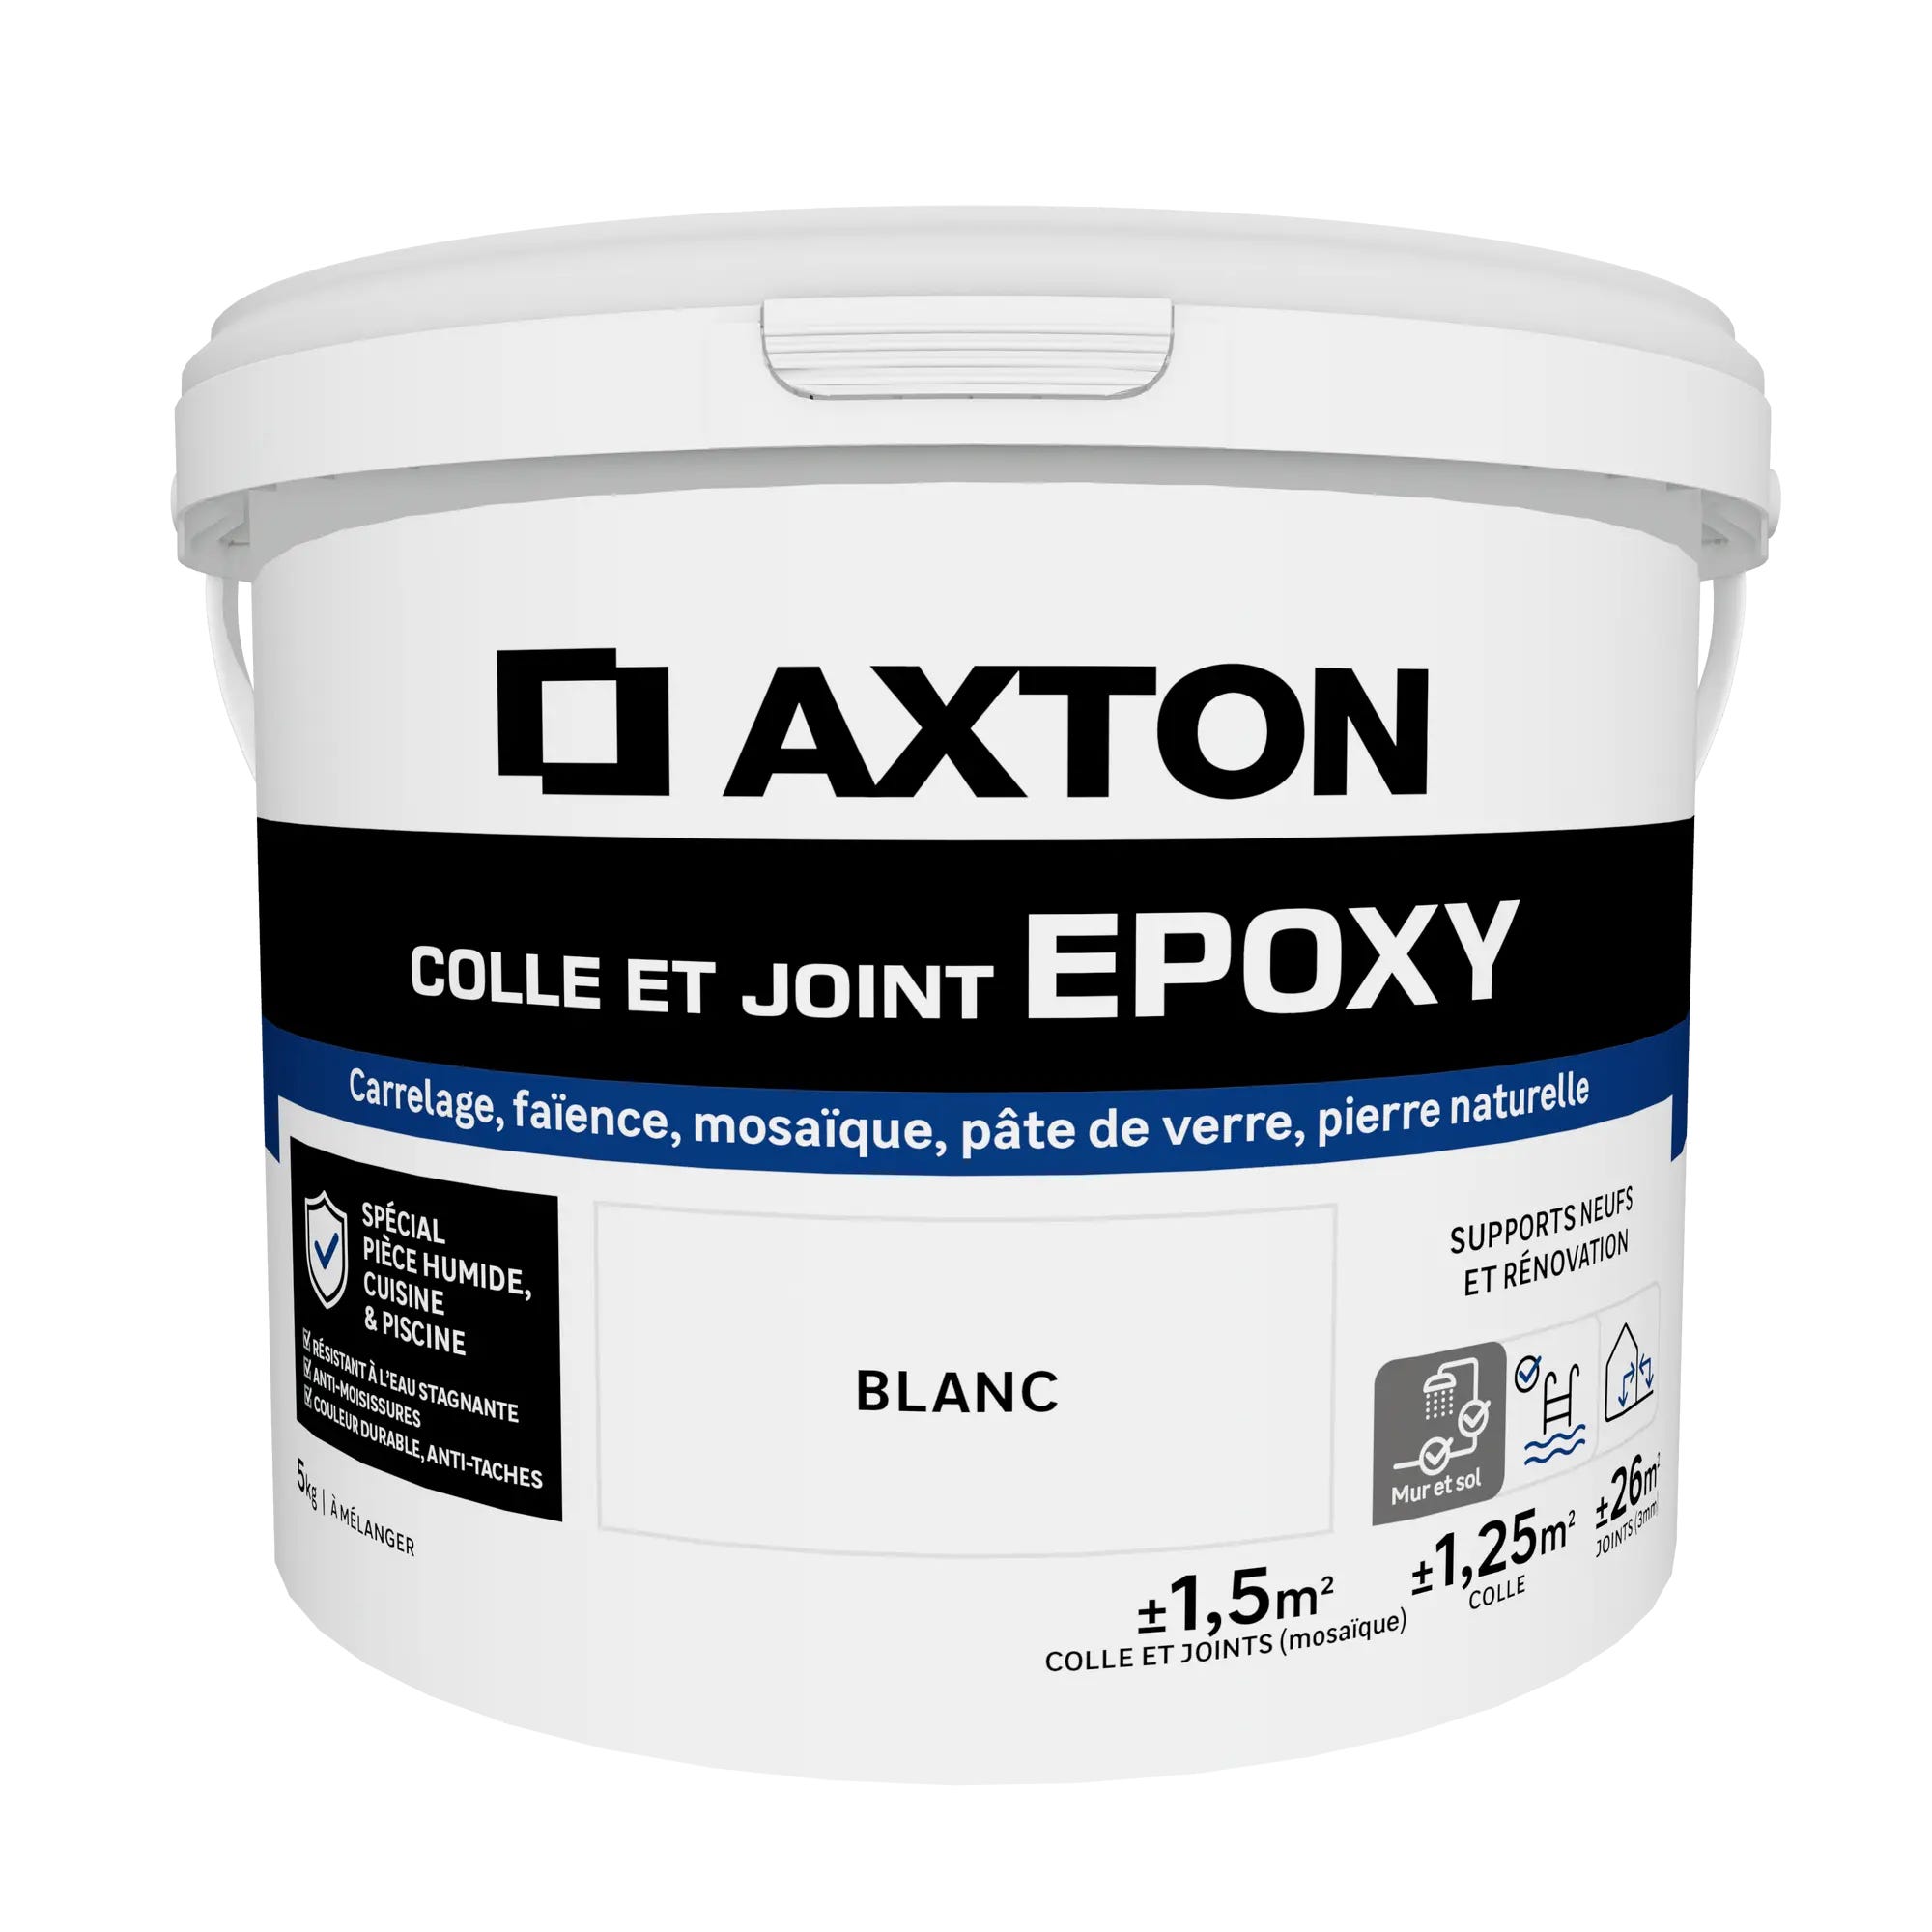 Colle et joint époxy AXTON, blanc 5 kg